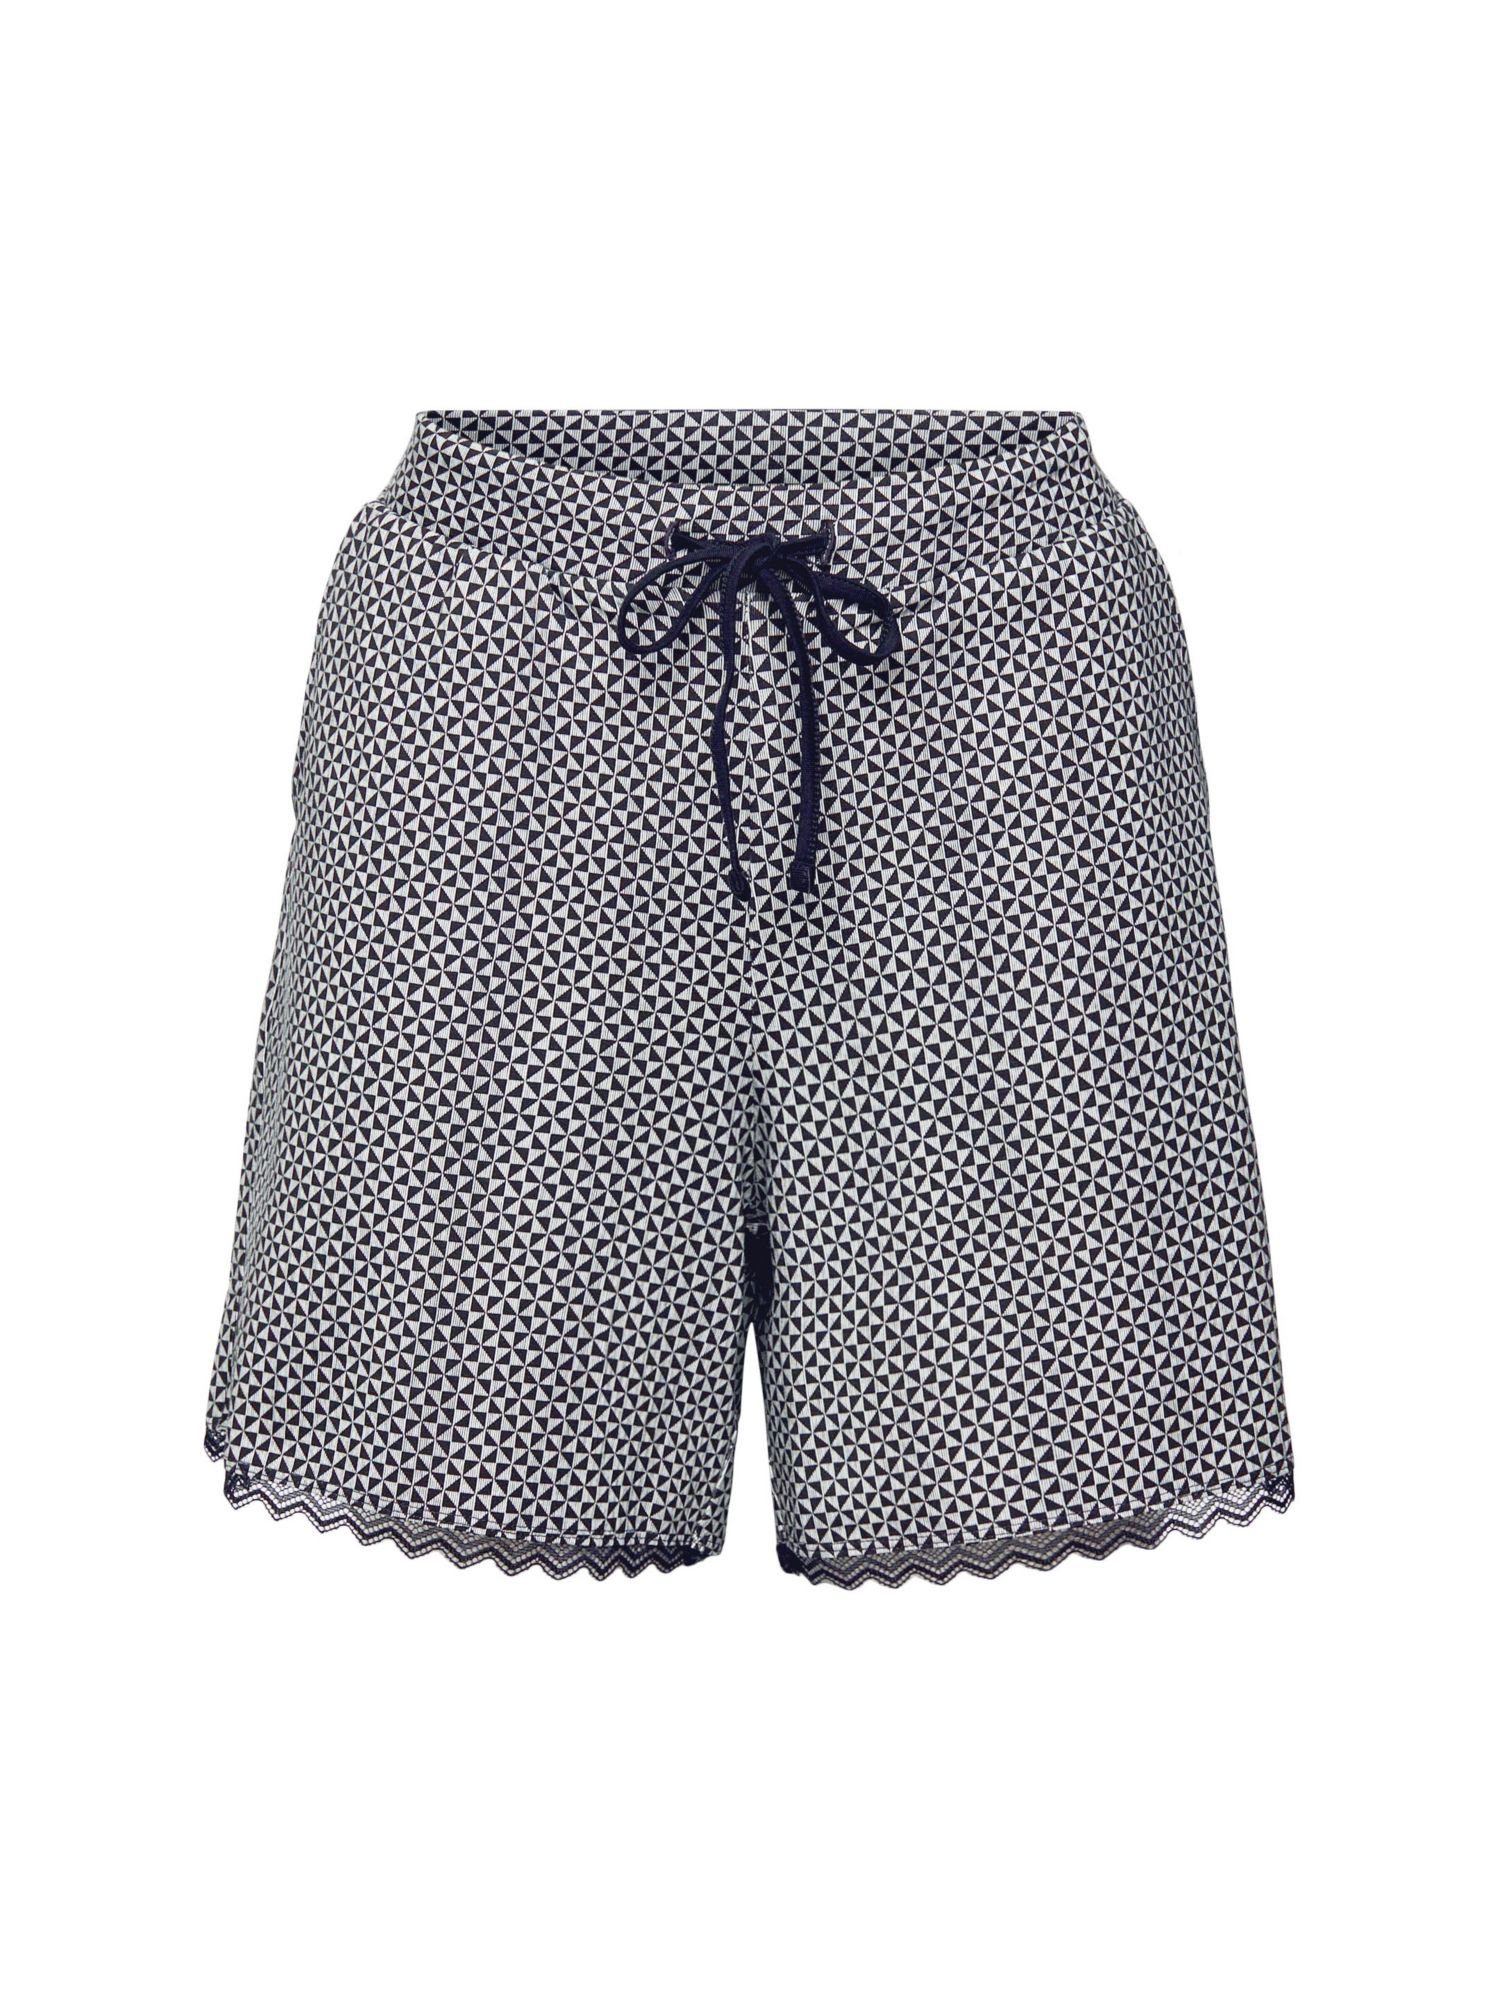 Esprit Schlafhose Jersey-Shorts mit Print BLACK | Schlafhosen